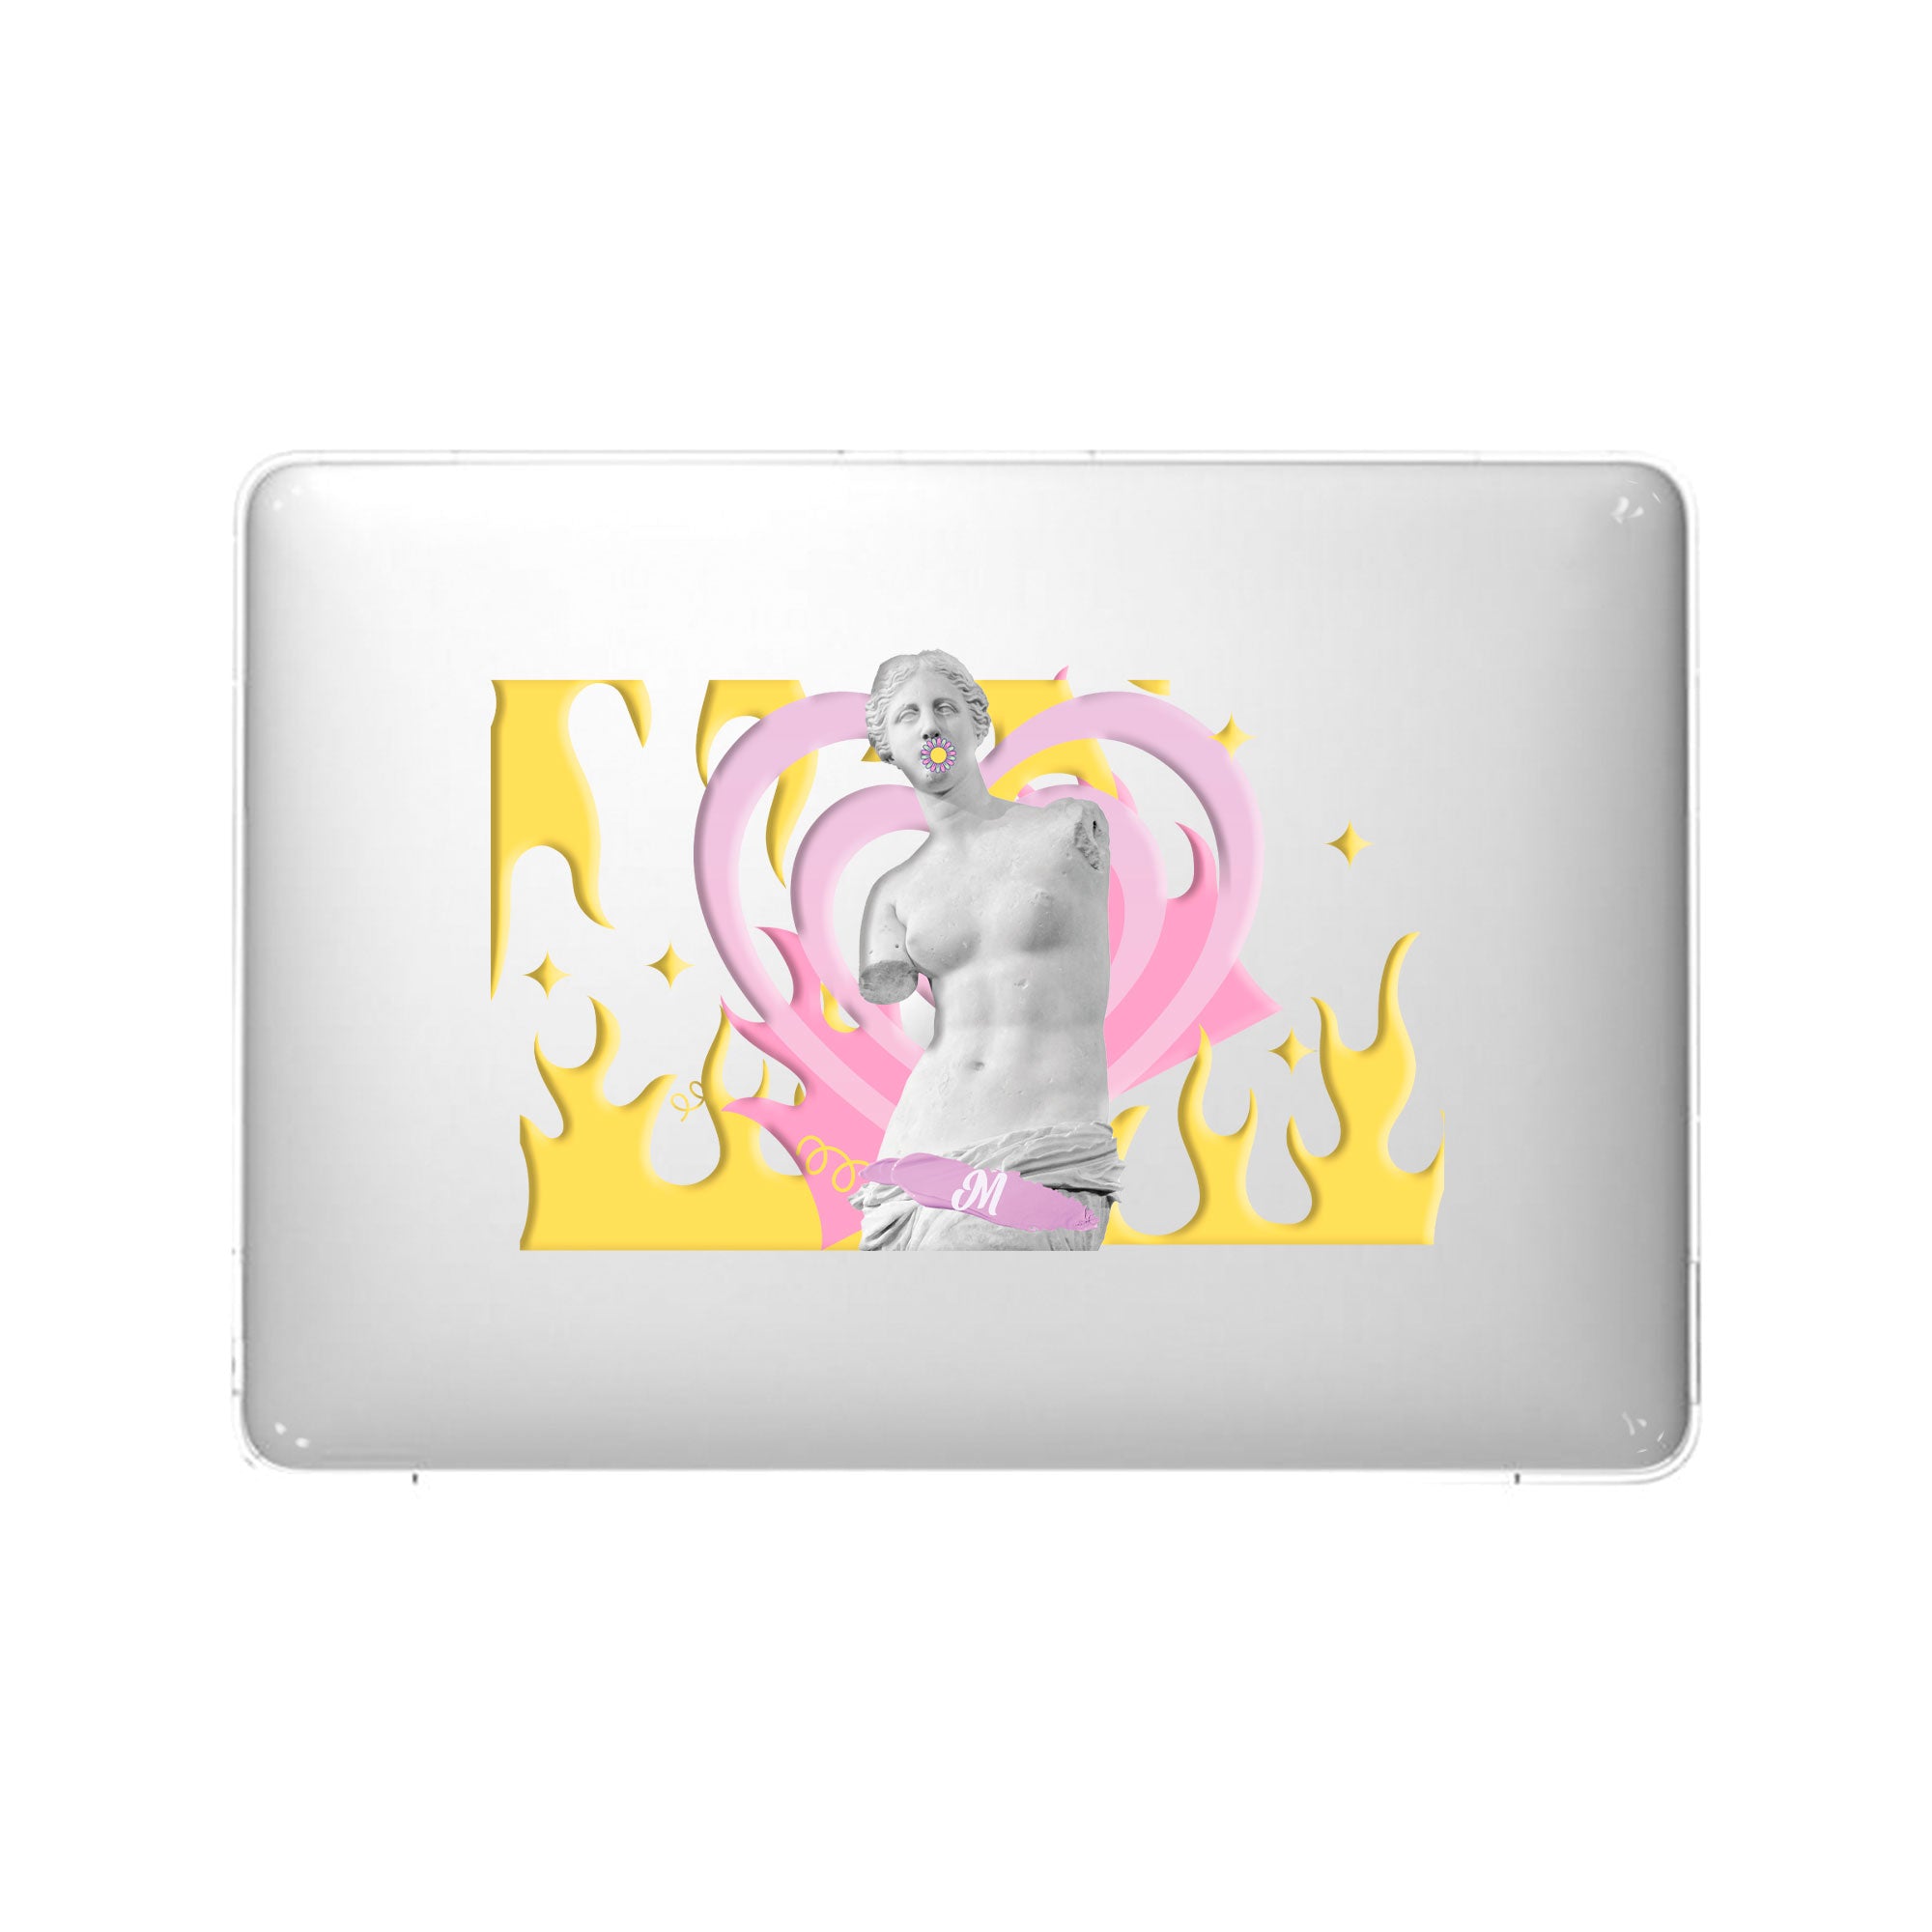 Venus escultura MacBook Case